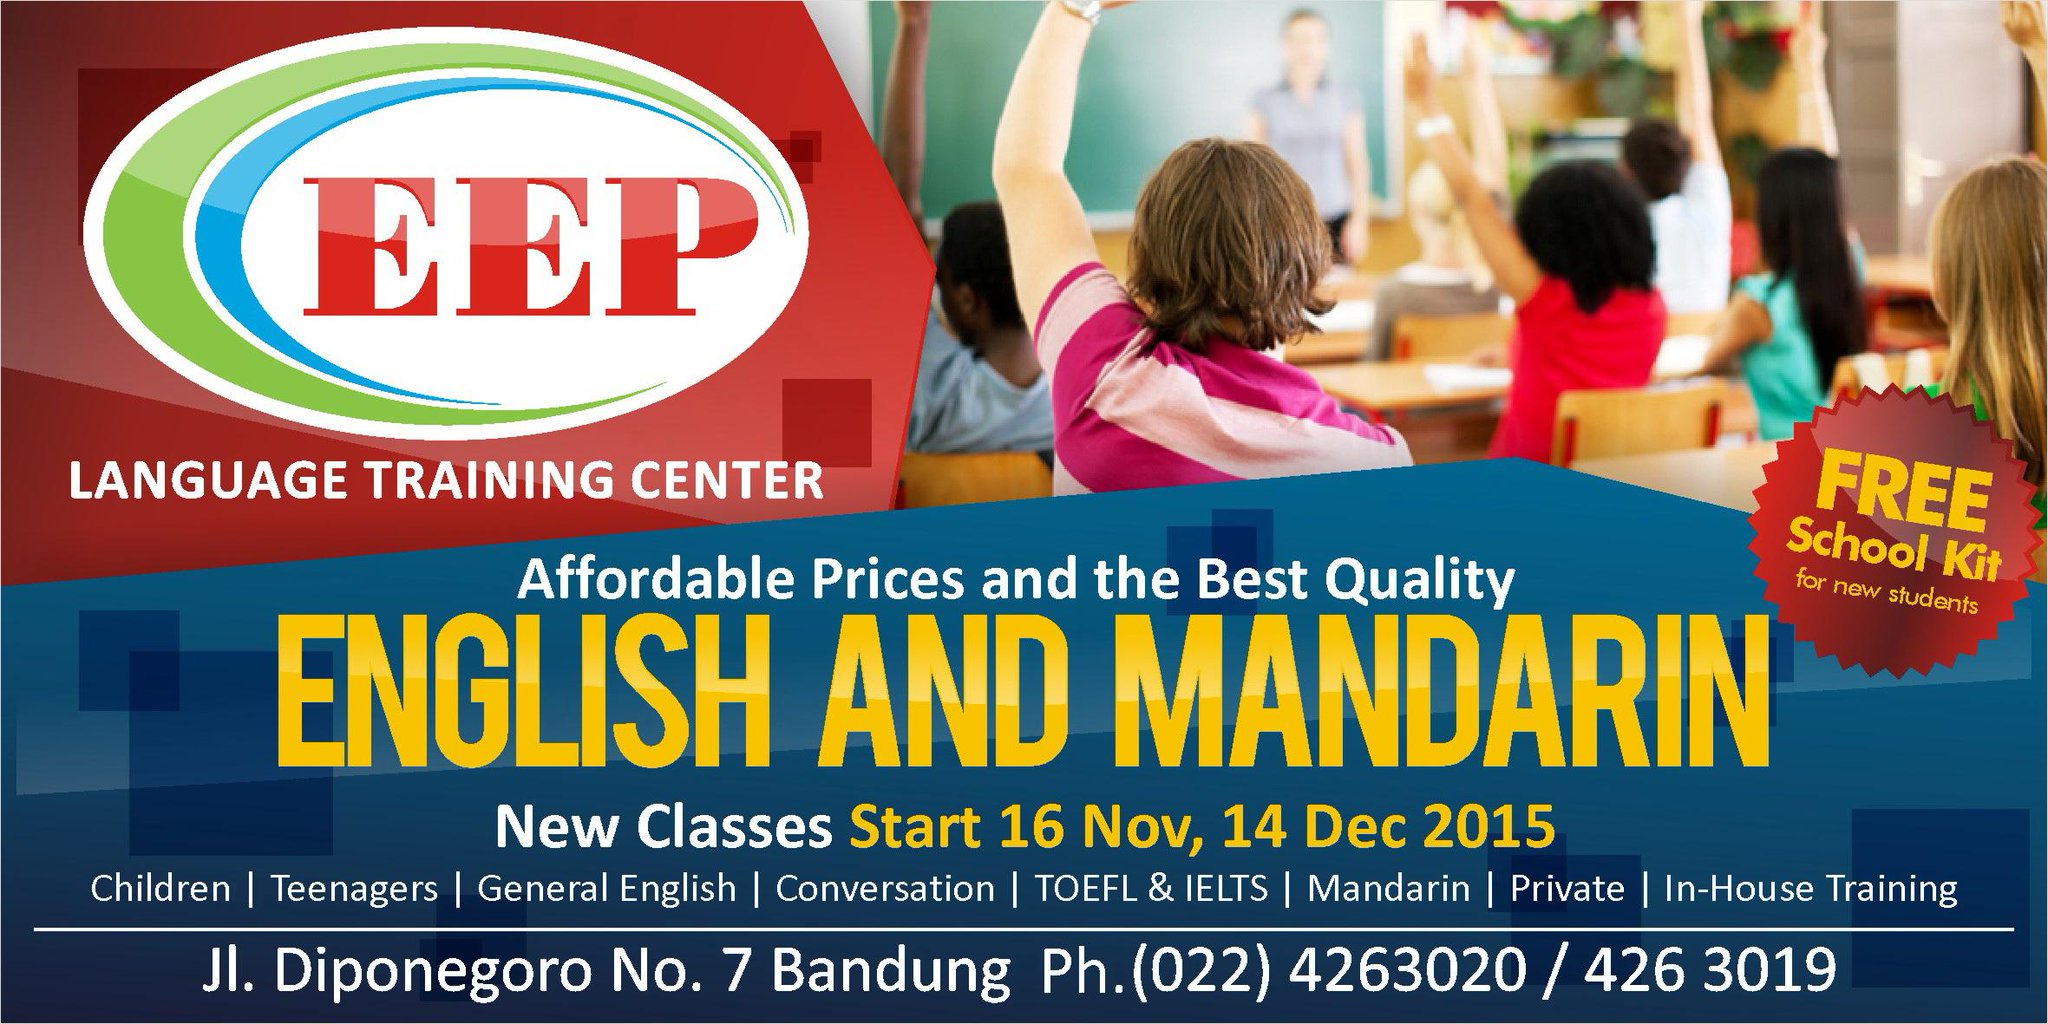 EEP sur Twitter "Bingung cari tempat kursus bahasa Inggris & Mandarin yang paling Ok di Bandung Dateng langsung aja ke EEP yaaaa